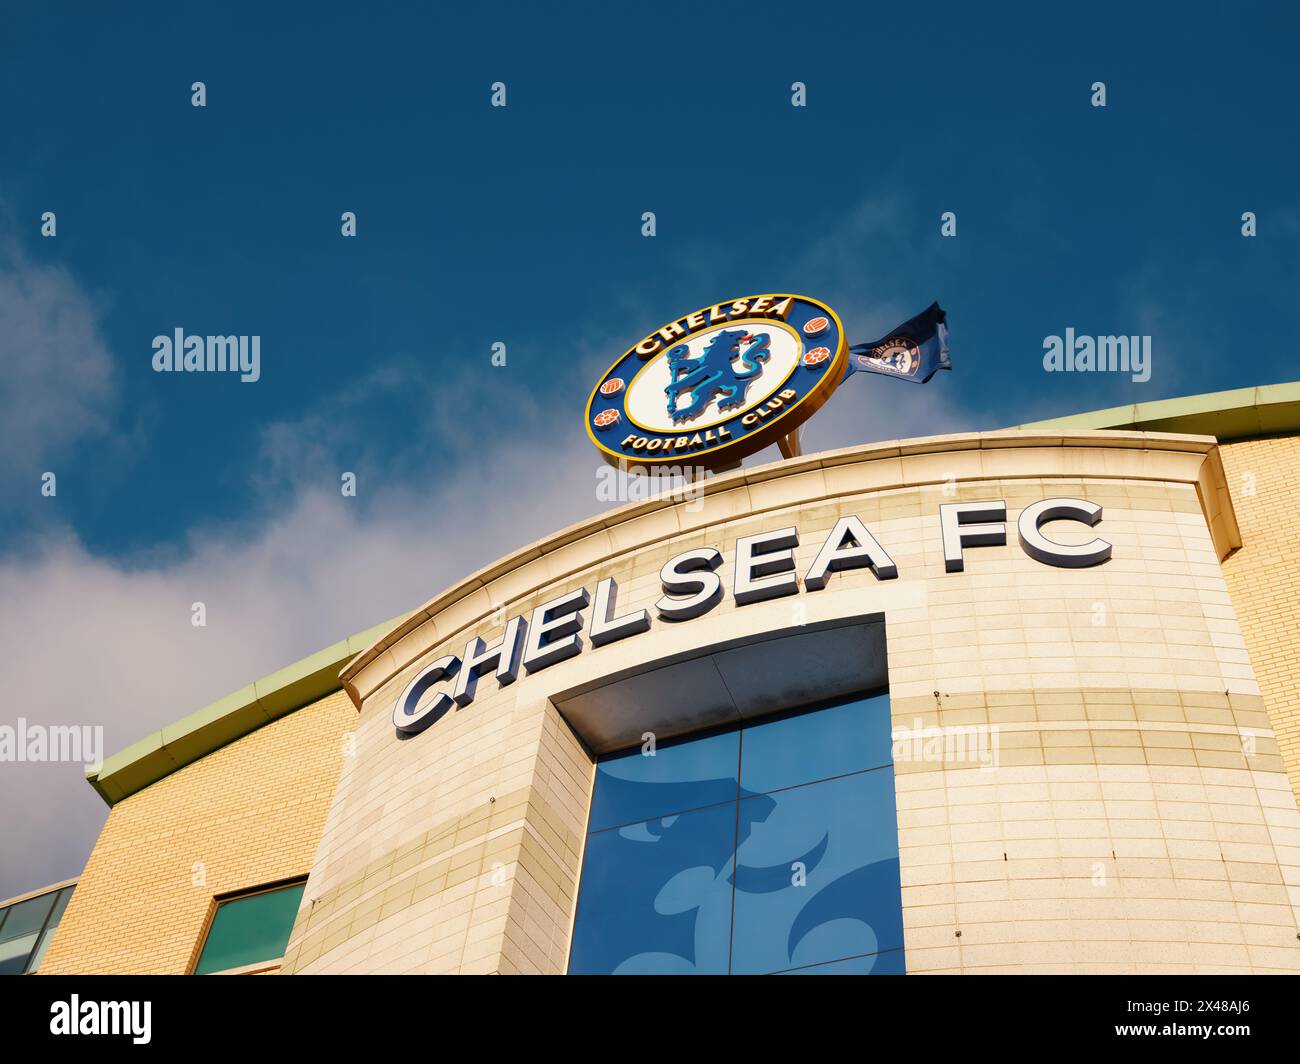 Stamford Bridge, le stade du Chelsea Football Club et le badge vous accueillent au West Stand à Chelsea, Londres Angleterre, Royaume-Uni Banque D'Images